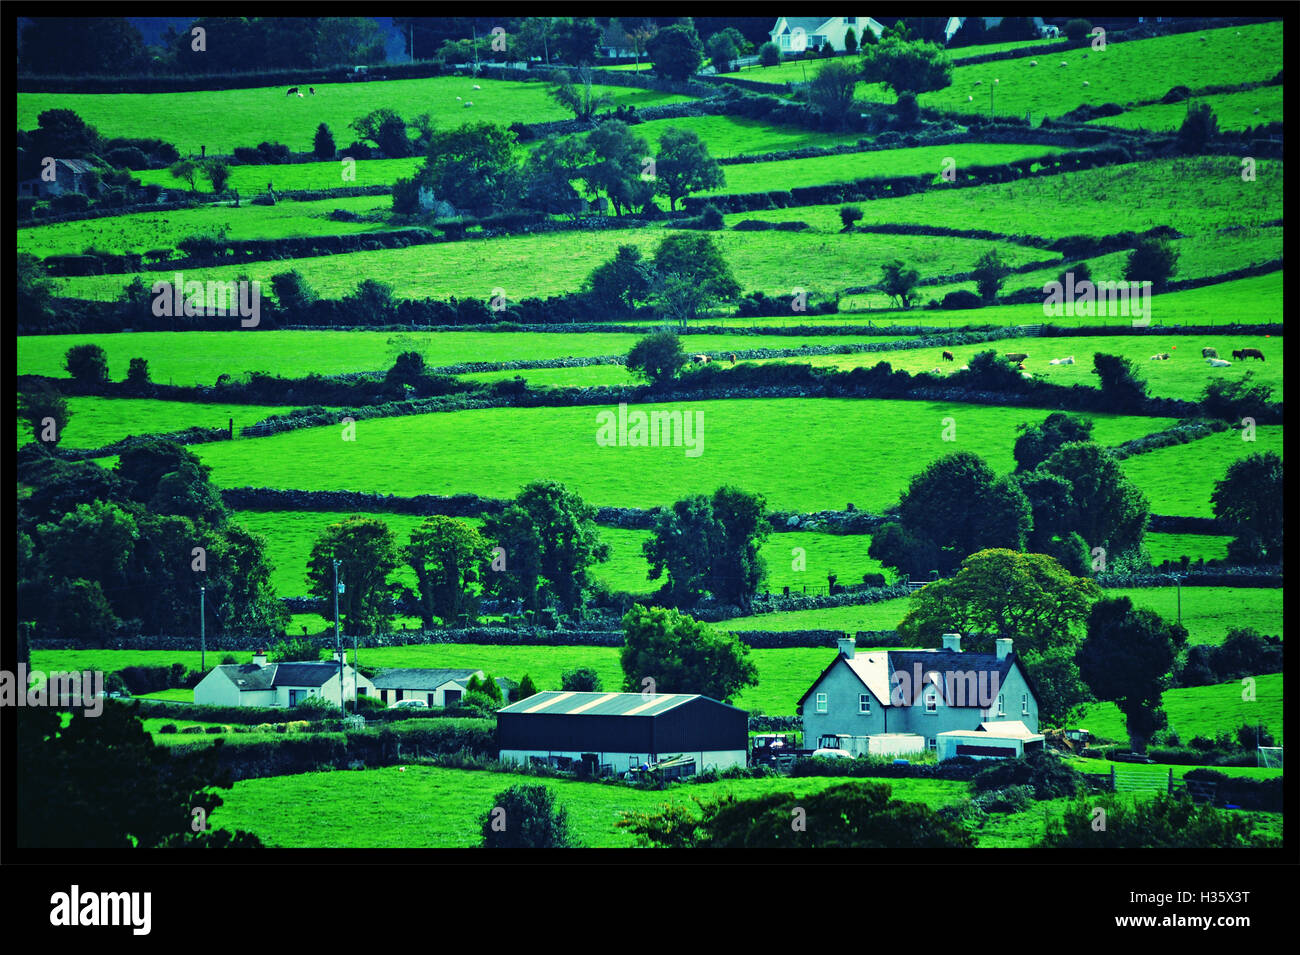 Castlewellan County, Northern Ireland, UK. Stock Photo